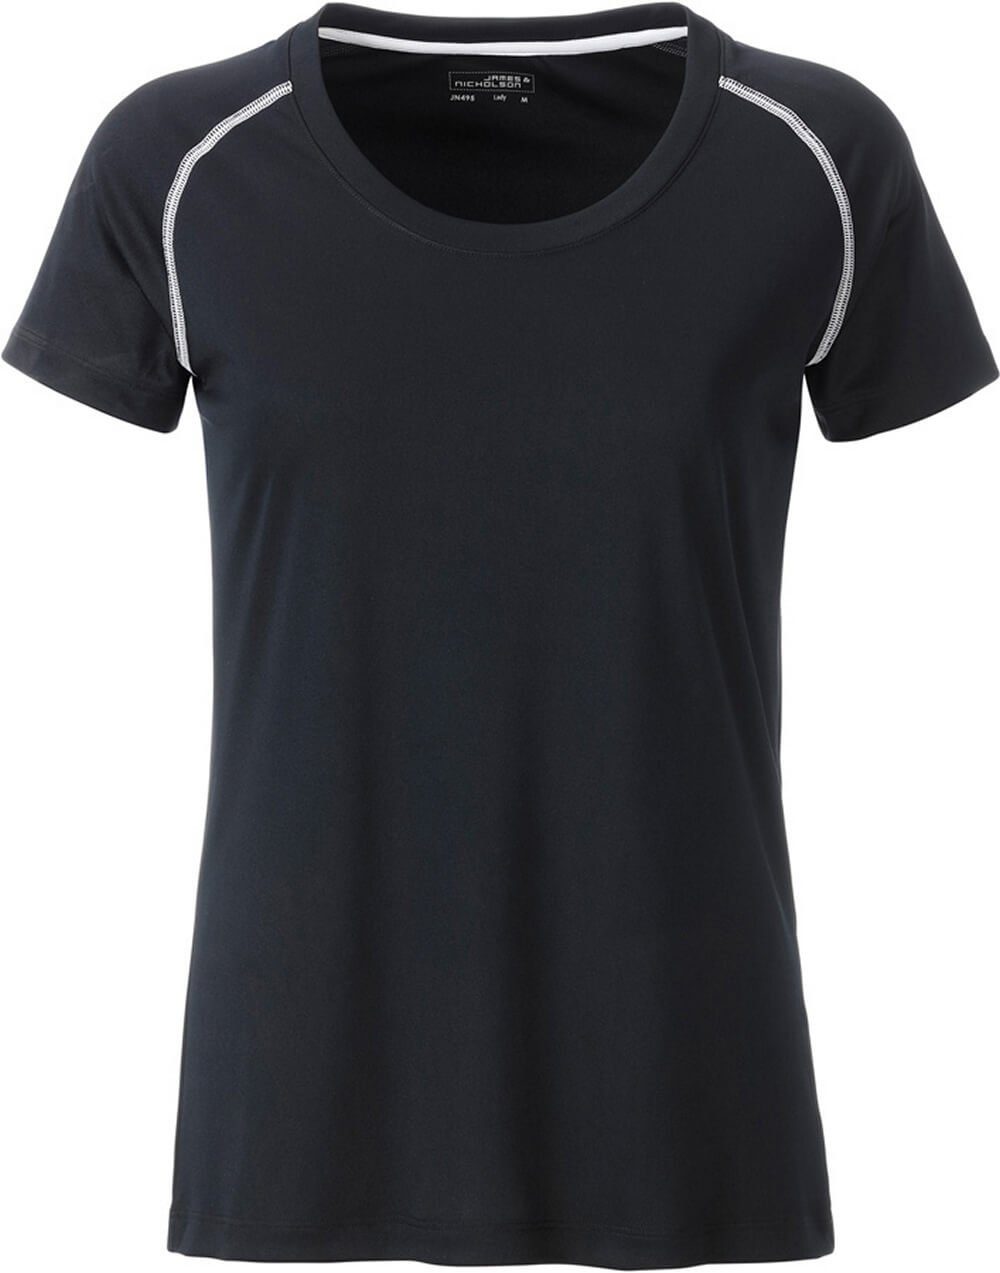 James & Nicholson Funktionsshirt James & Nicholson JN 495 Damen Funktions-Shirt schnell trocknend black/white